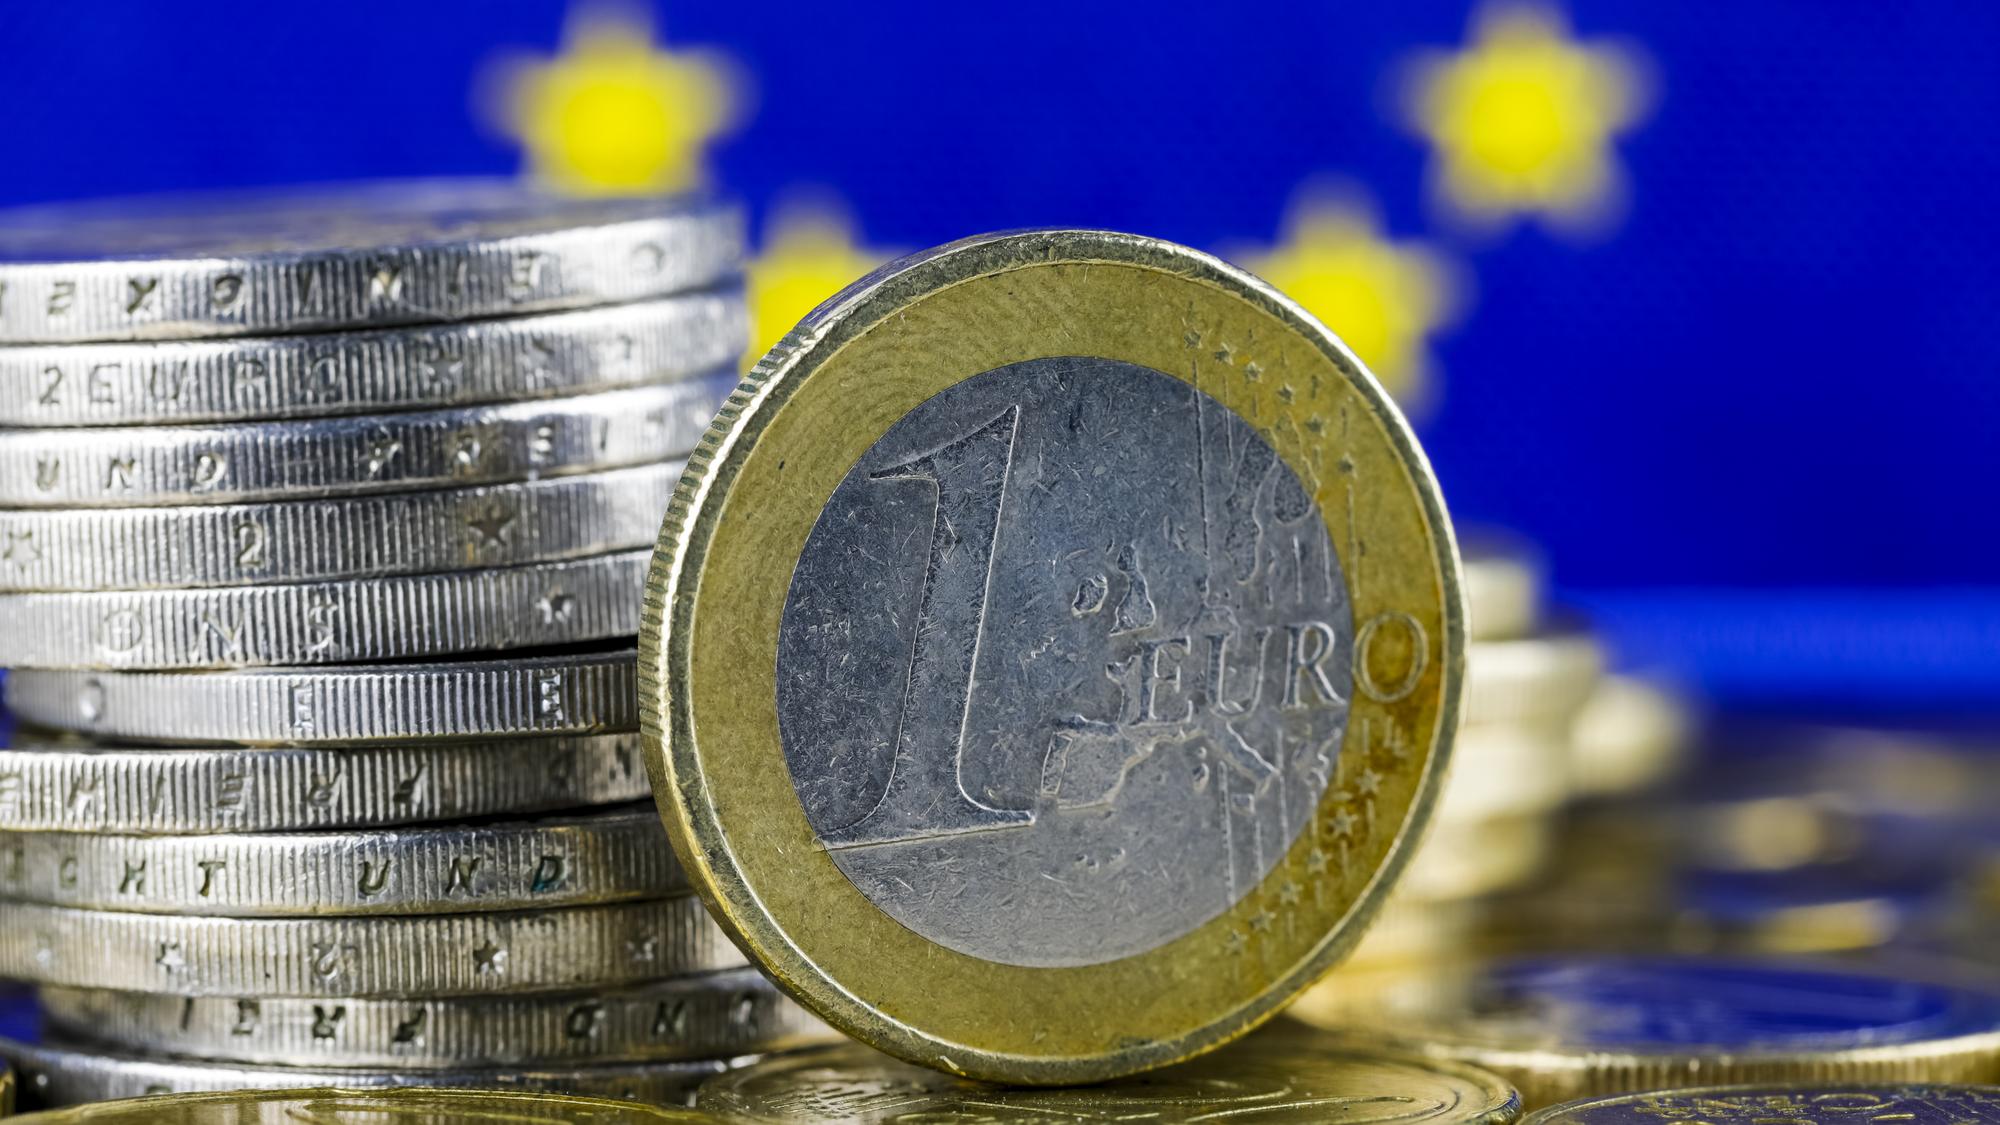 Poľsko 20 rokov po vstupe do EÚ nepovažuje prijatie eura za opodstatnené (ilustračné foto)